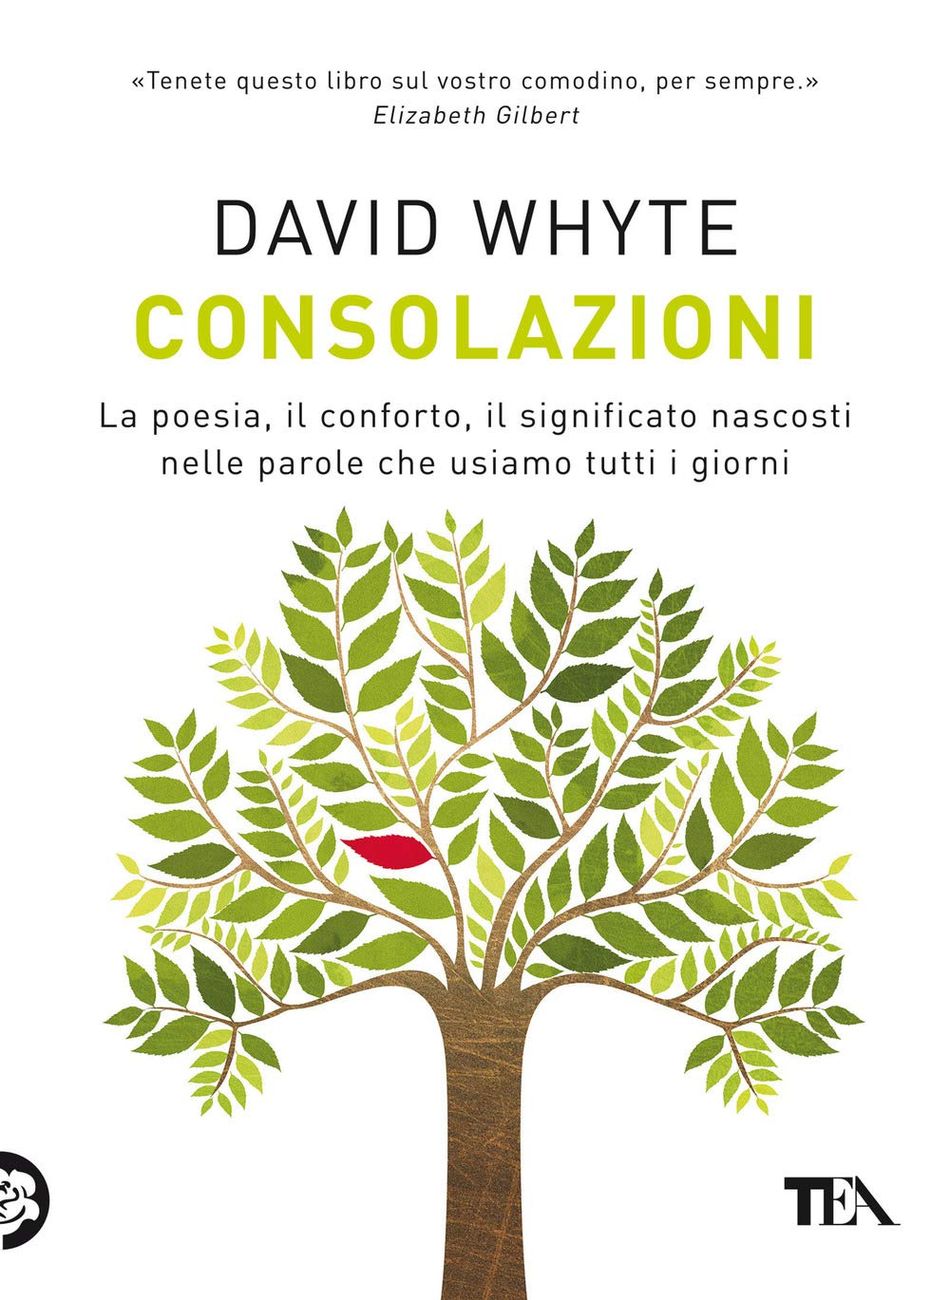 David Whyte – Consolazioni (TEA Libri, Milano 2021)